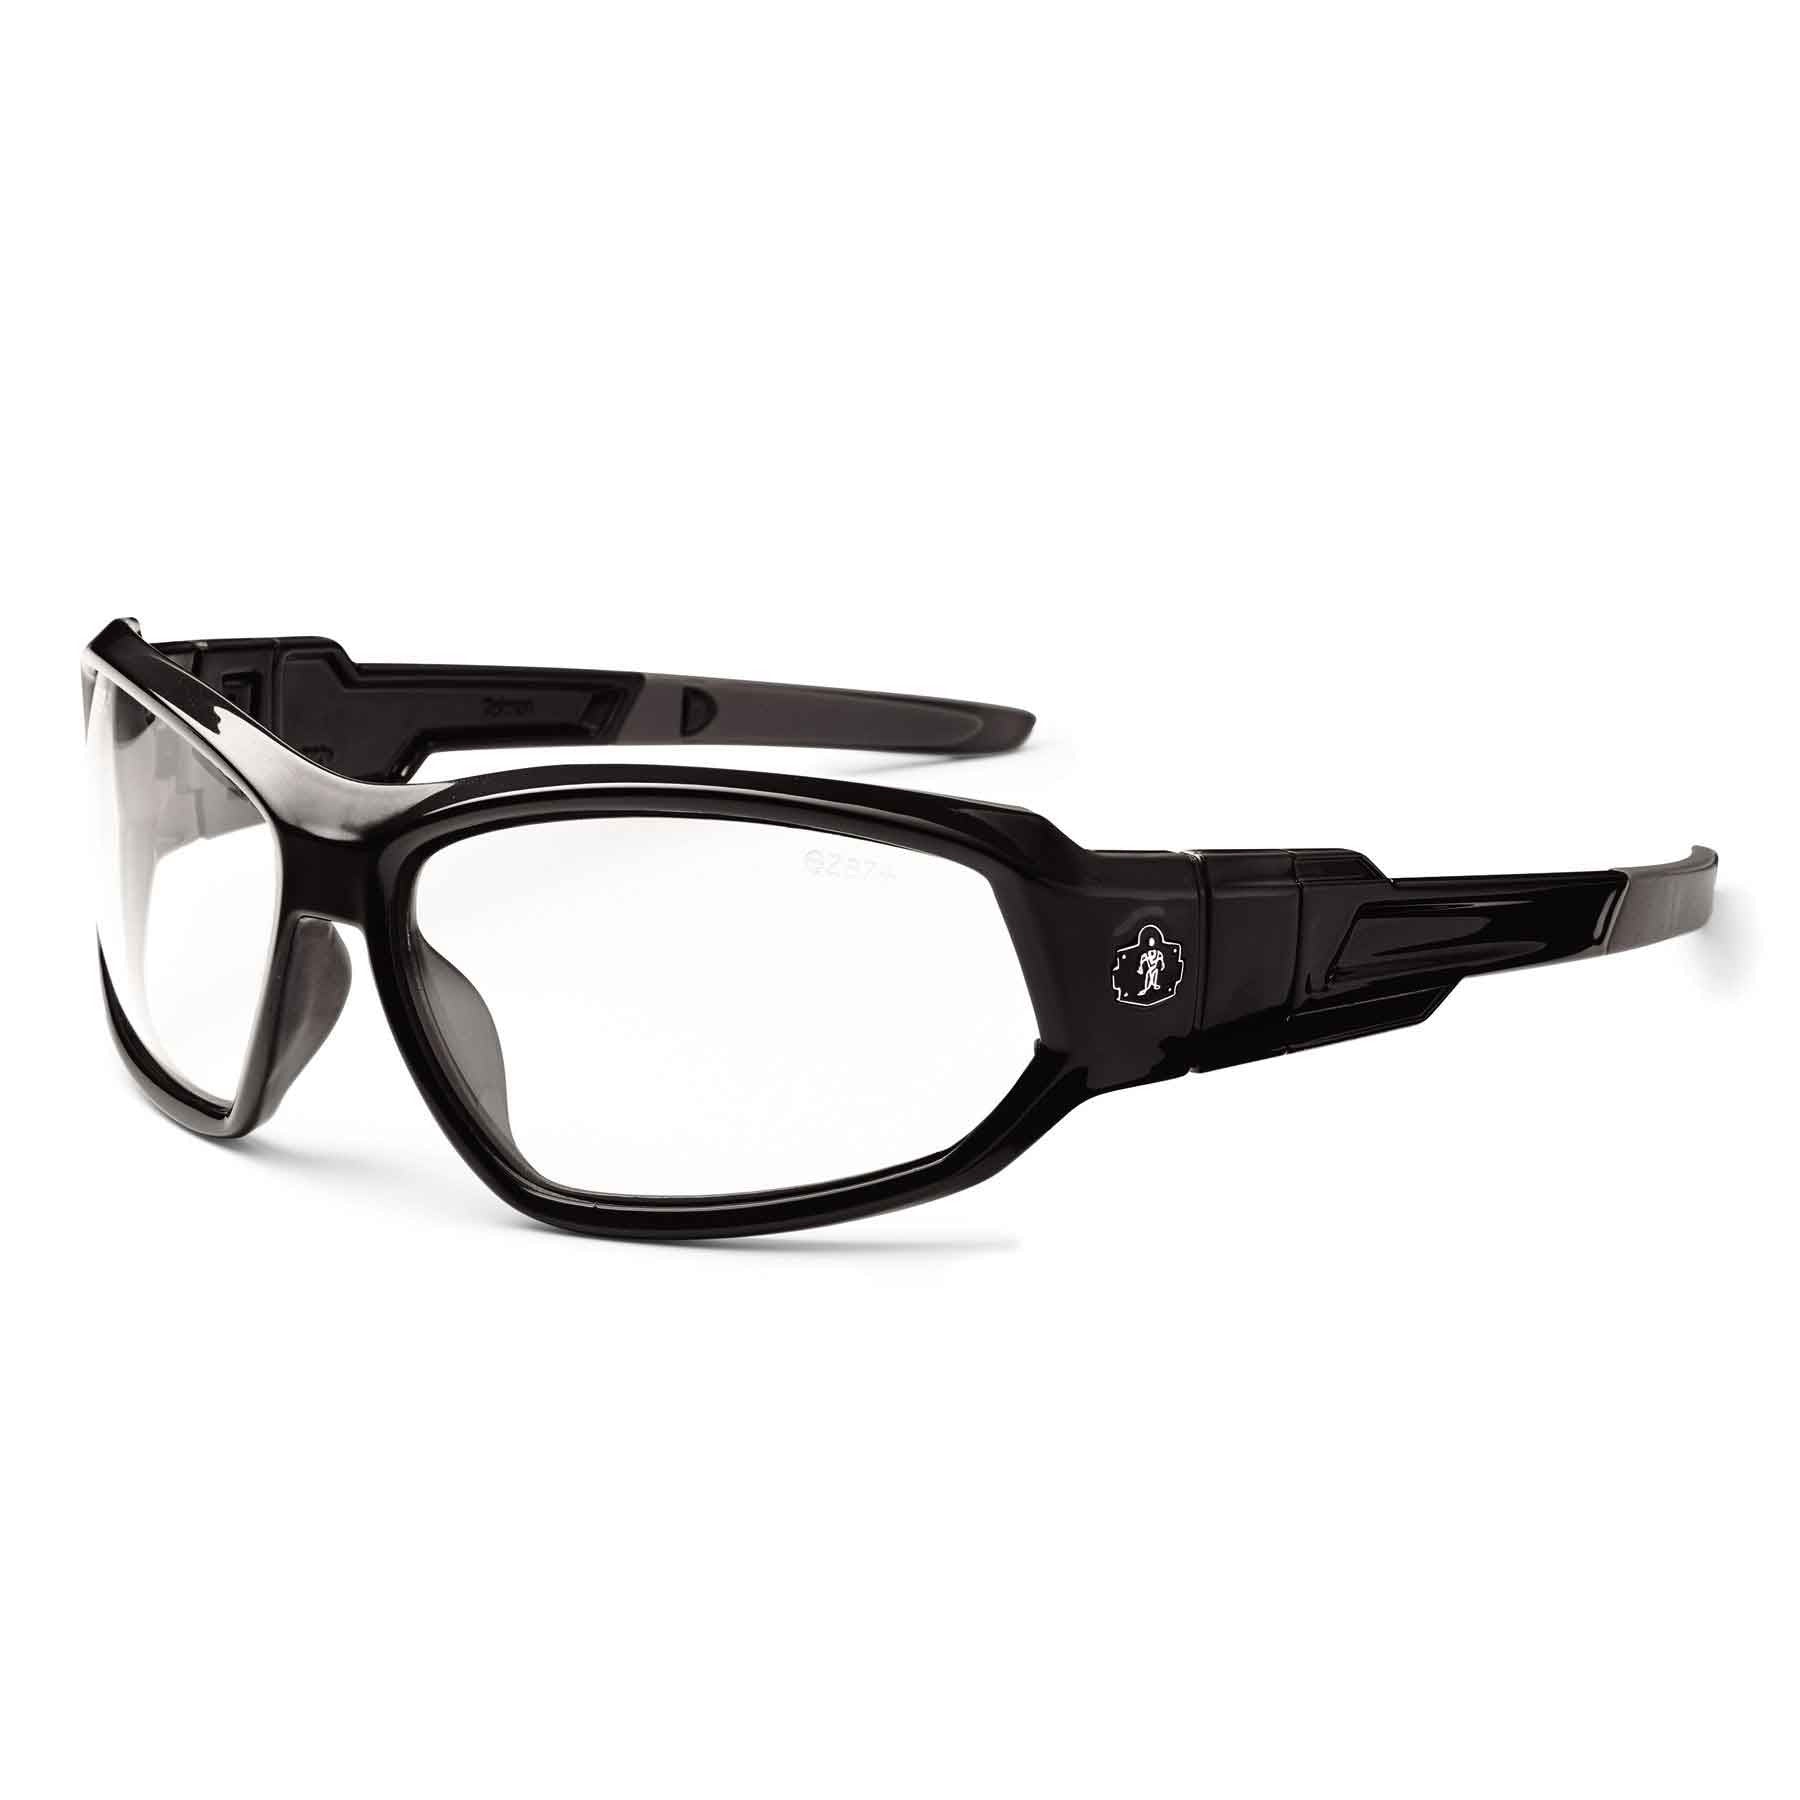 Skullerz Loki Safety Glasses-eSafety Supplies, Inc